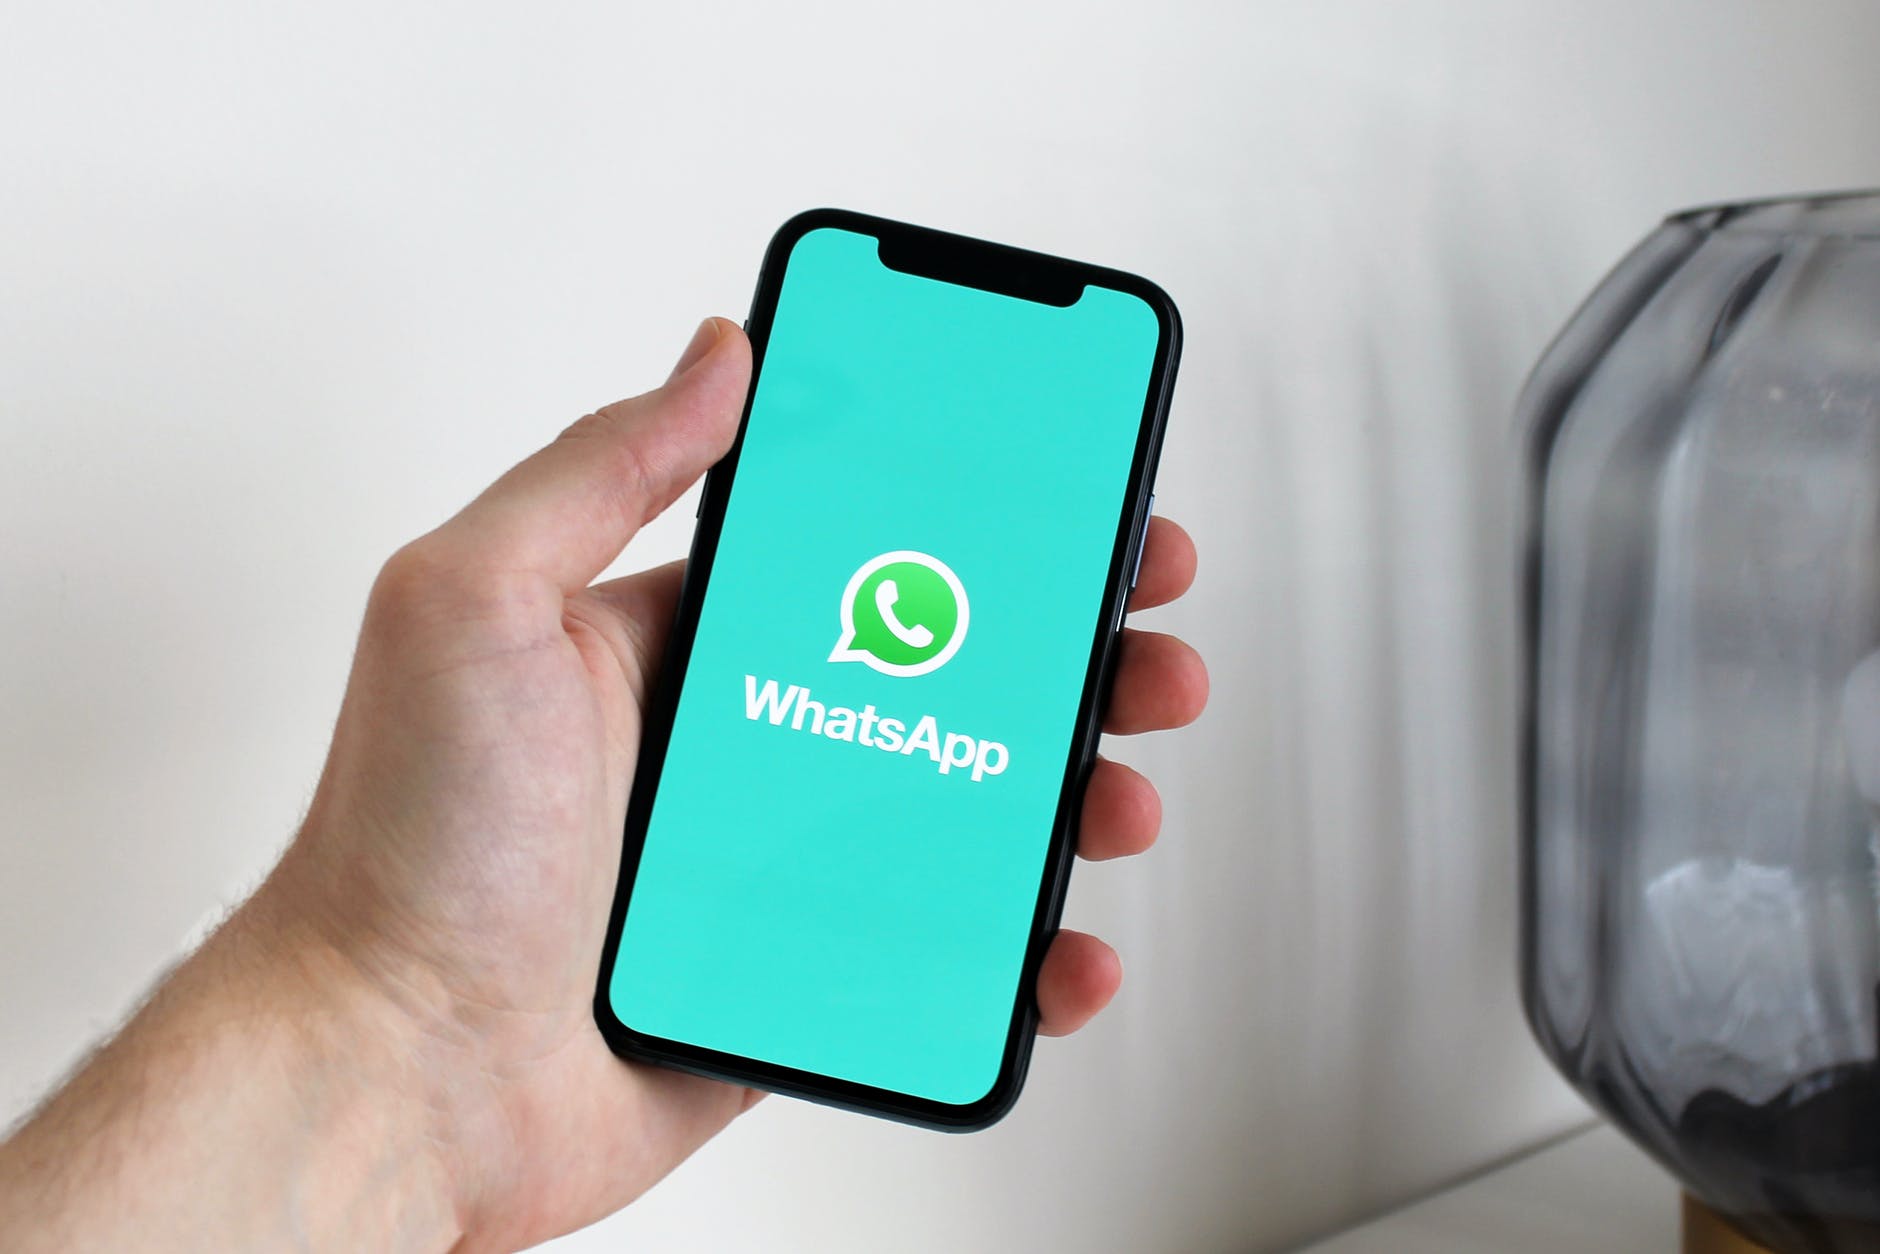 Se livre de conversas inconvenientes no WhatsApp sem precisar bloqueá-los